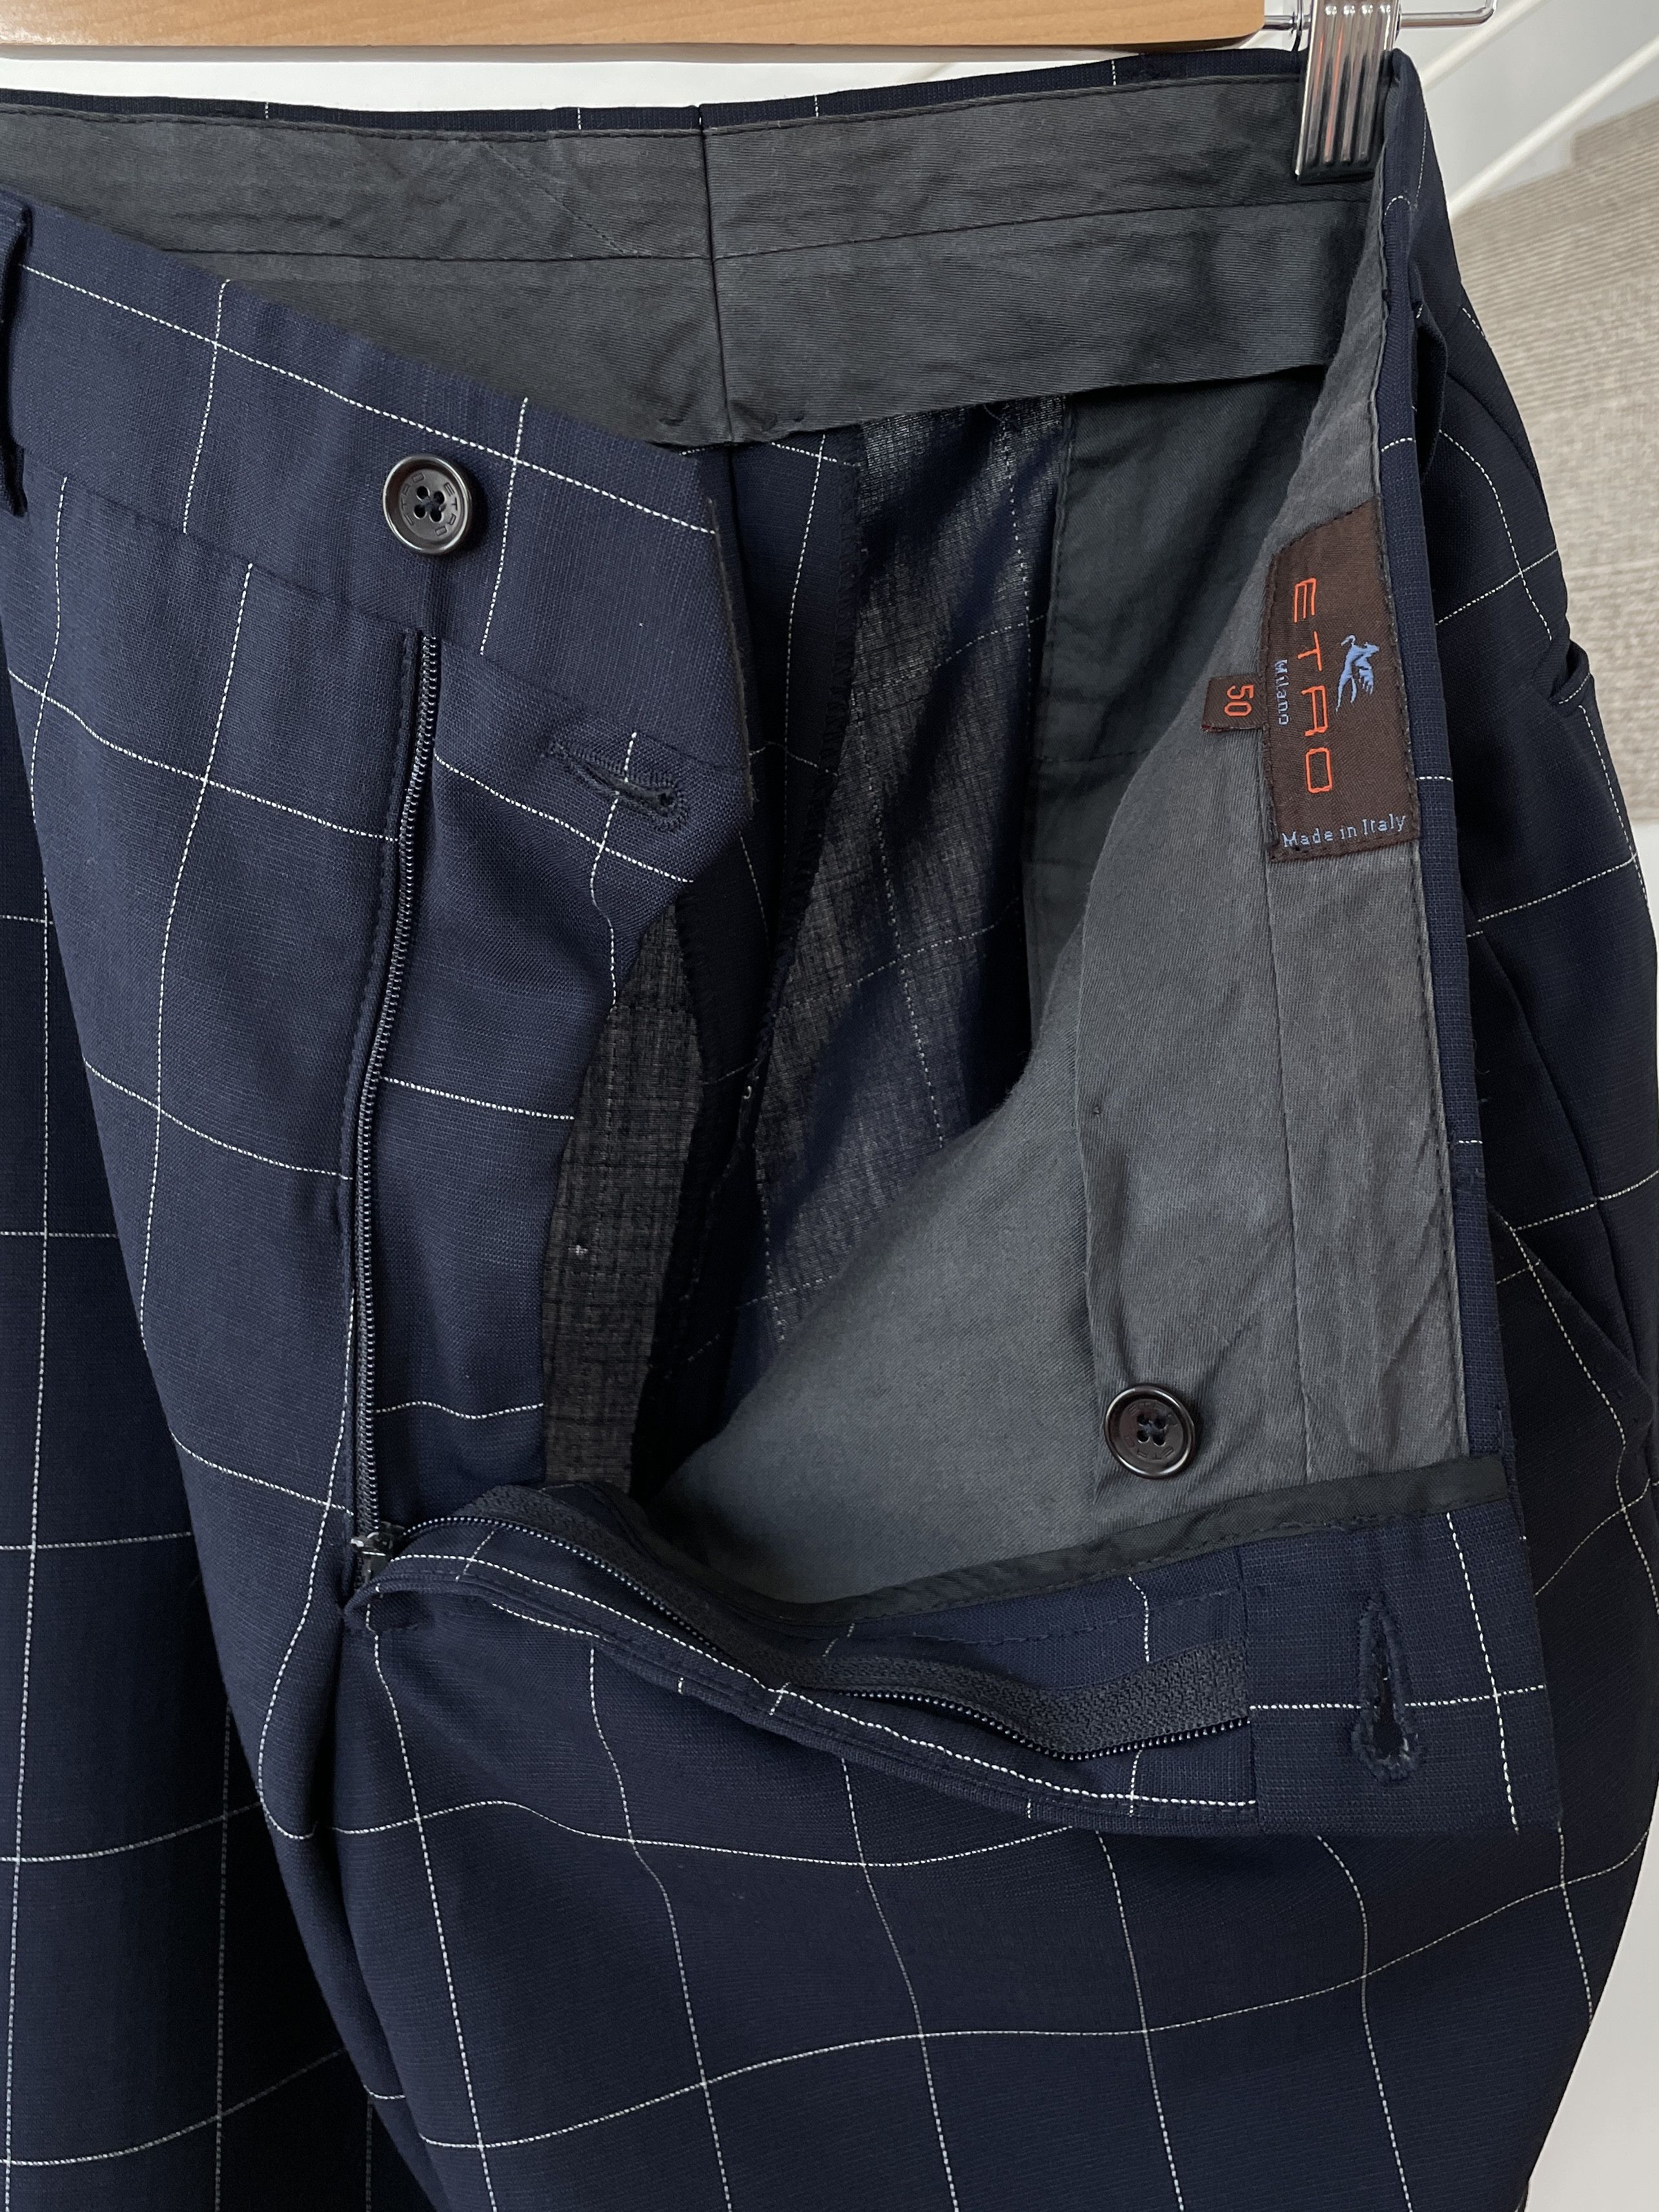 Etro ETRO Jacket Coat Blazer Trousers Suit Plaid Wool A7923 Size 40R - 9 Thumbnail